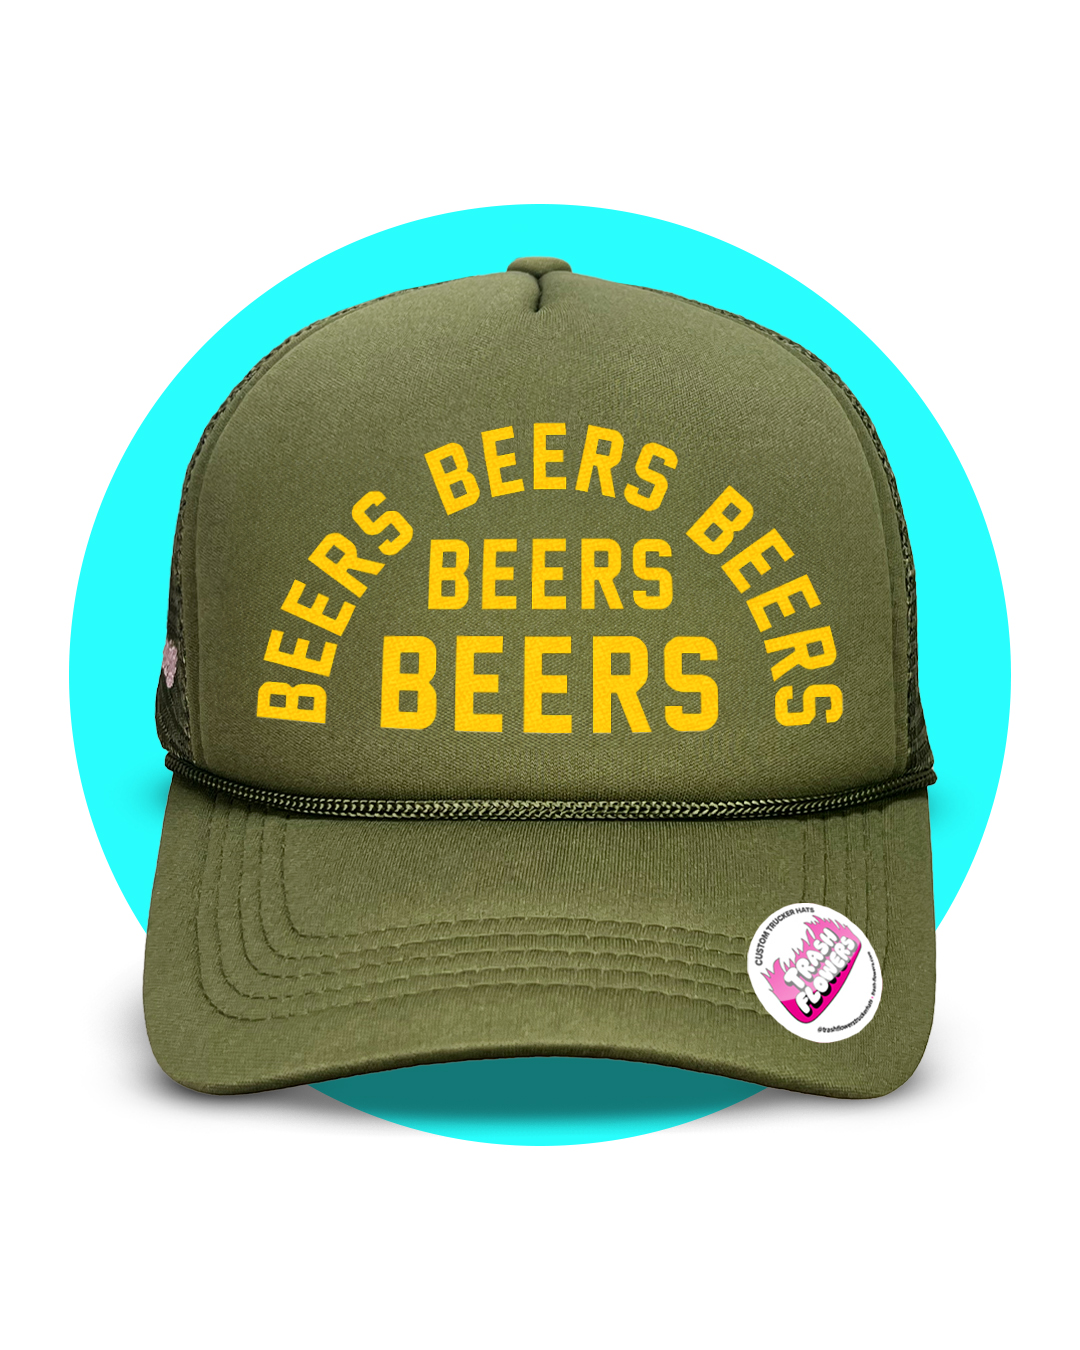 Beers Beers Beers Trucker Hat